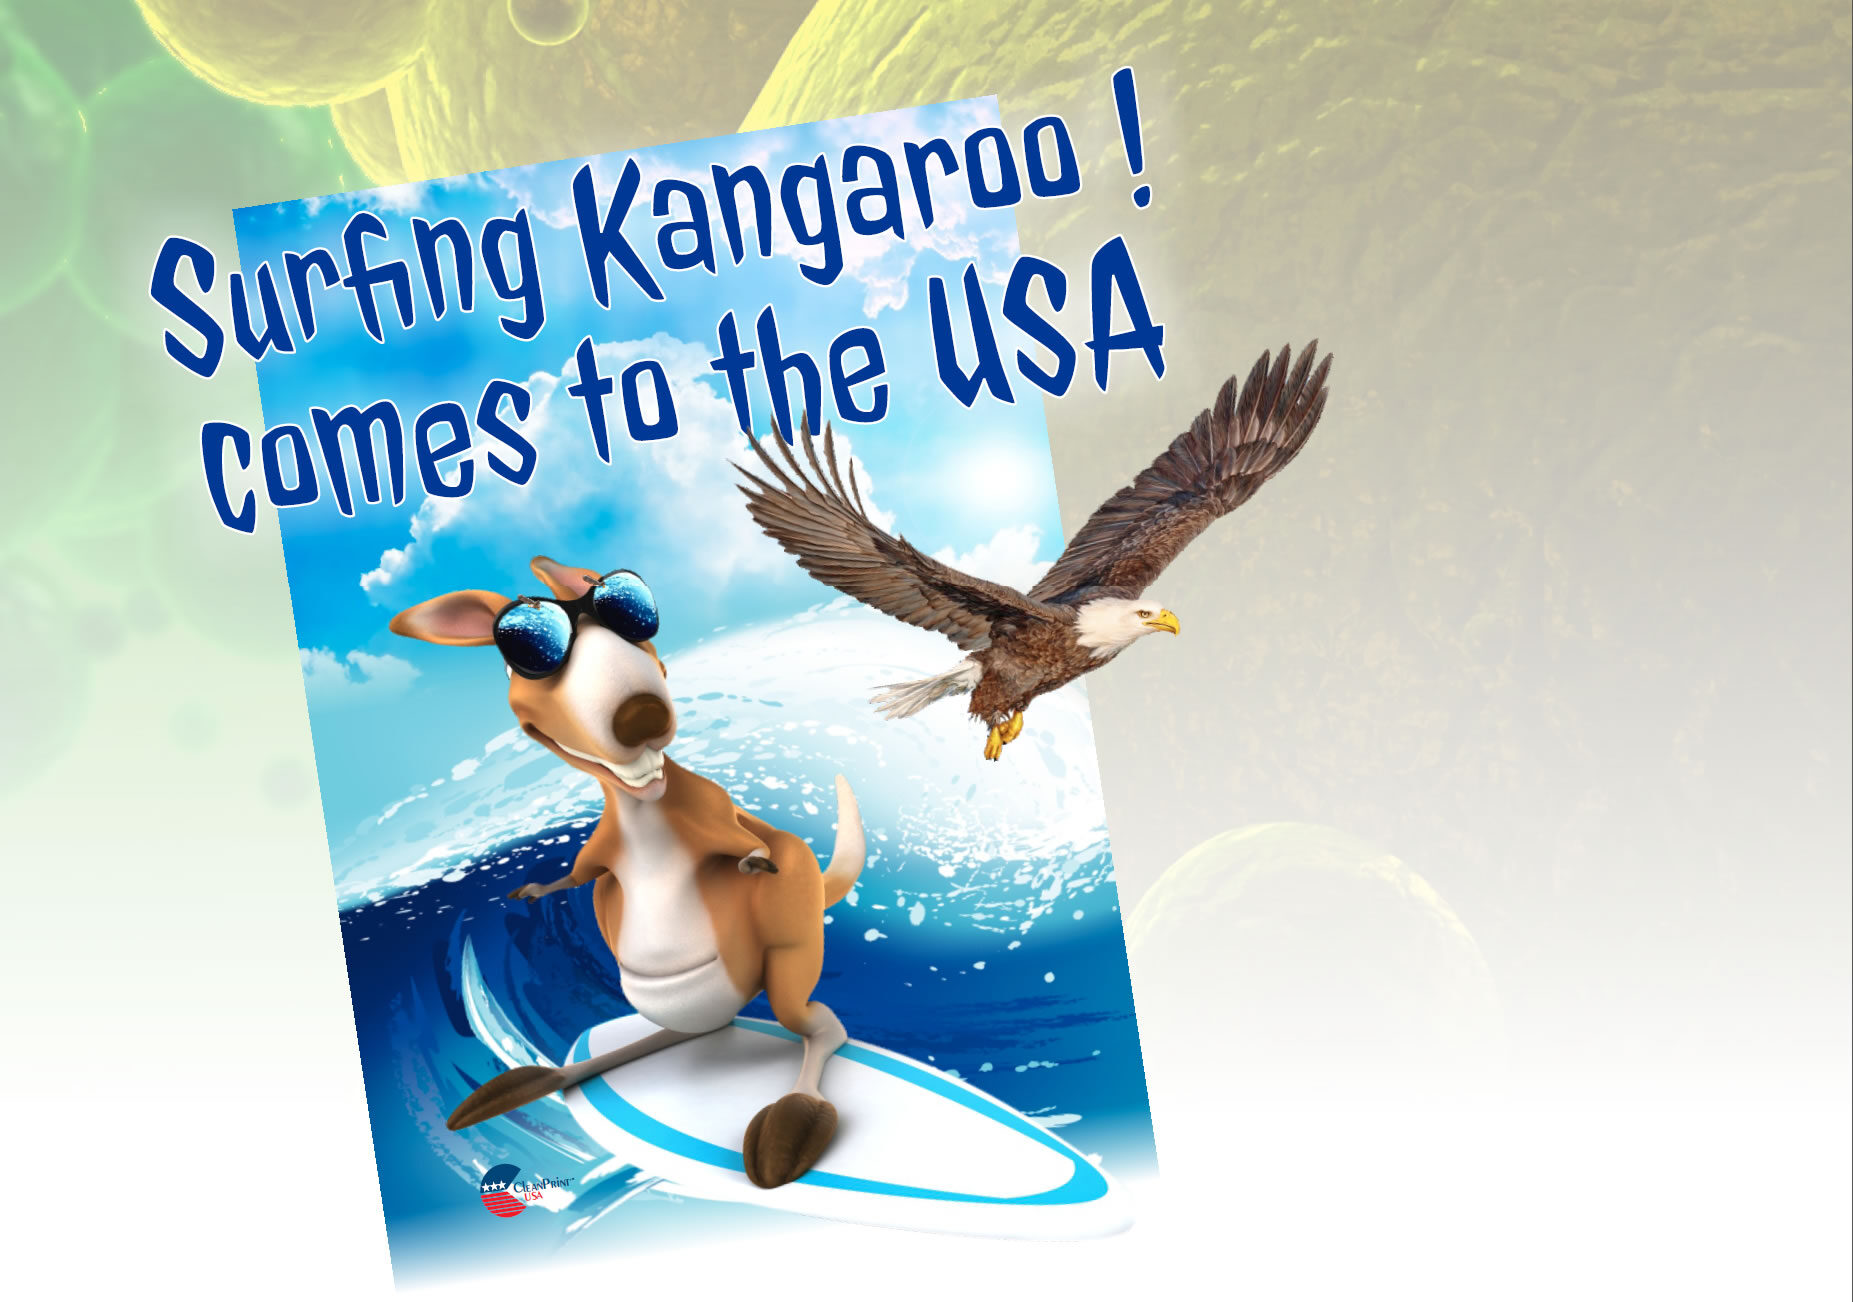 Free Surfing Kangaroo Coloring Book